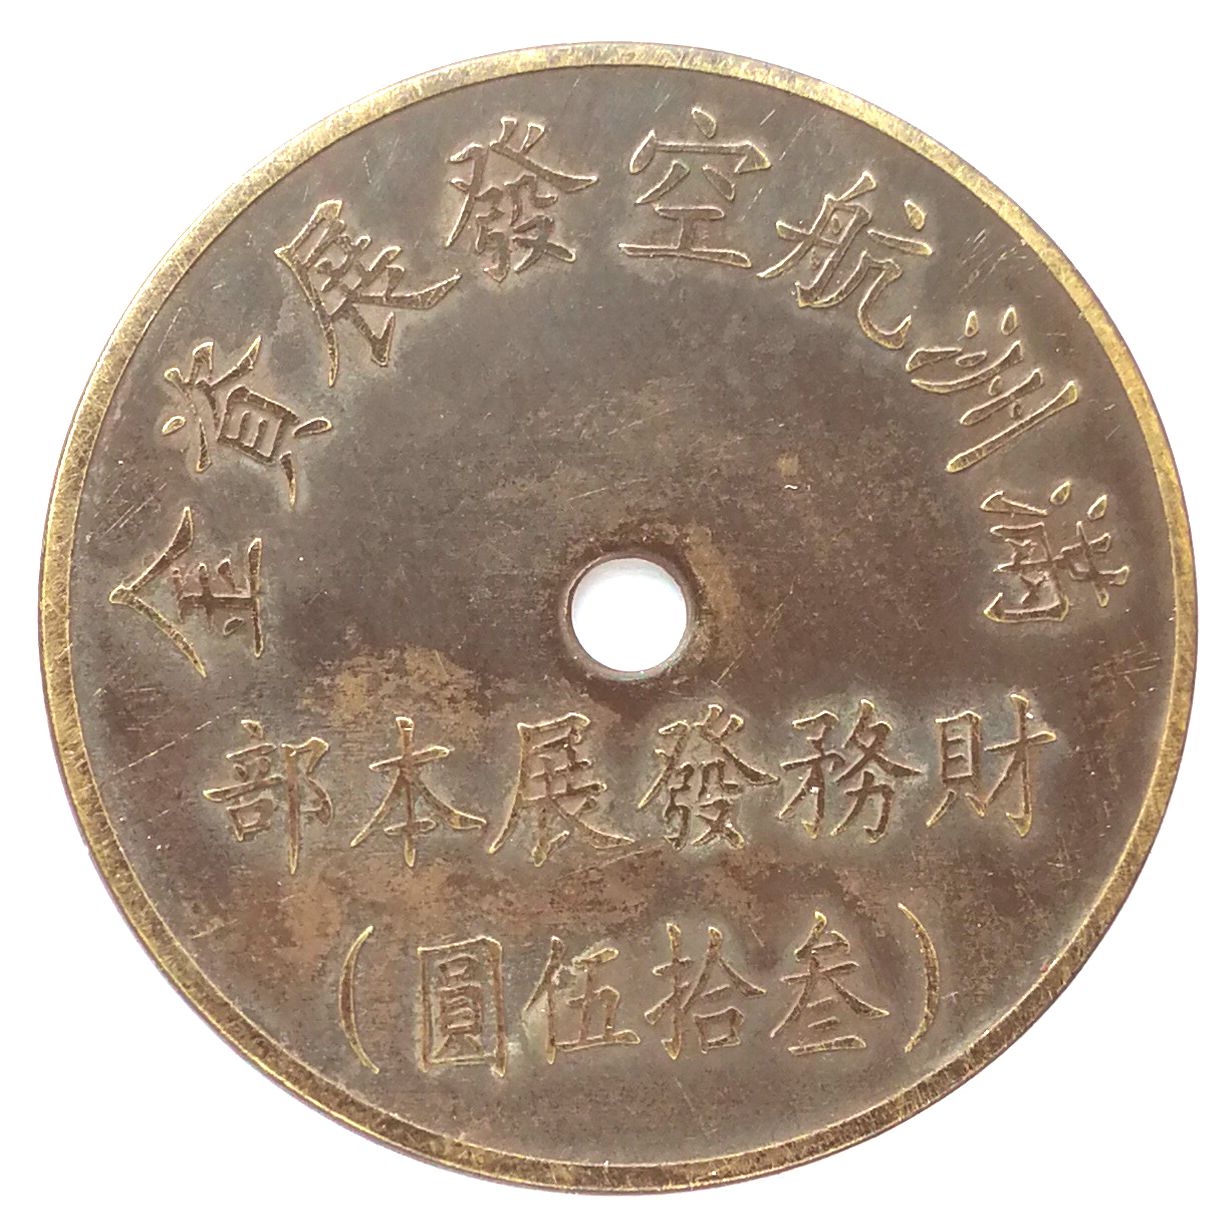 BT485, Manchukuo Aviation Development Fund, 35 Yen Token, 1945